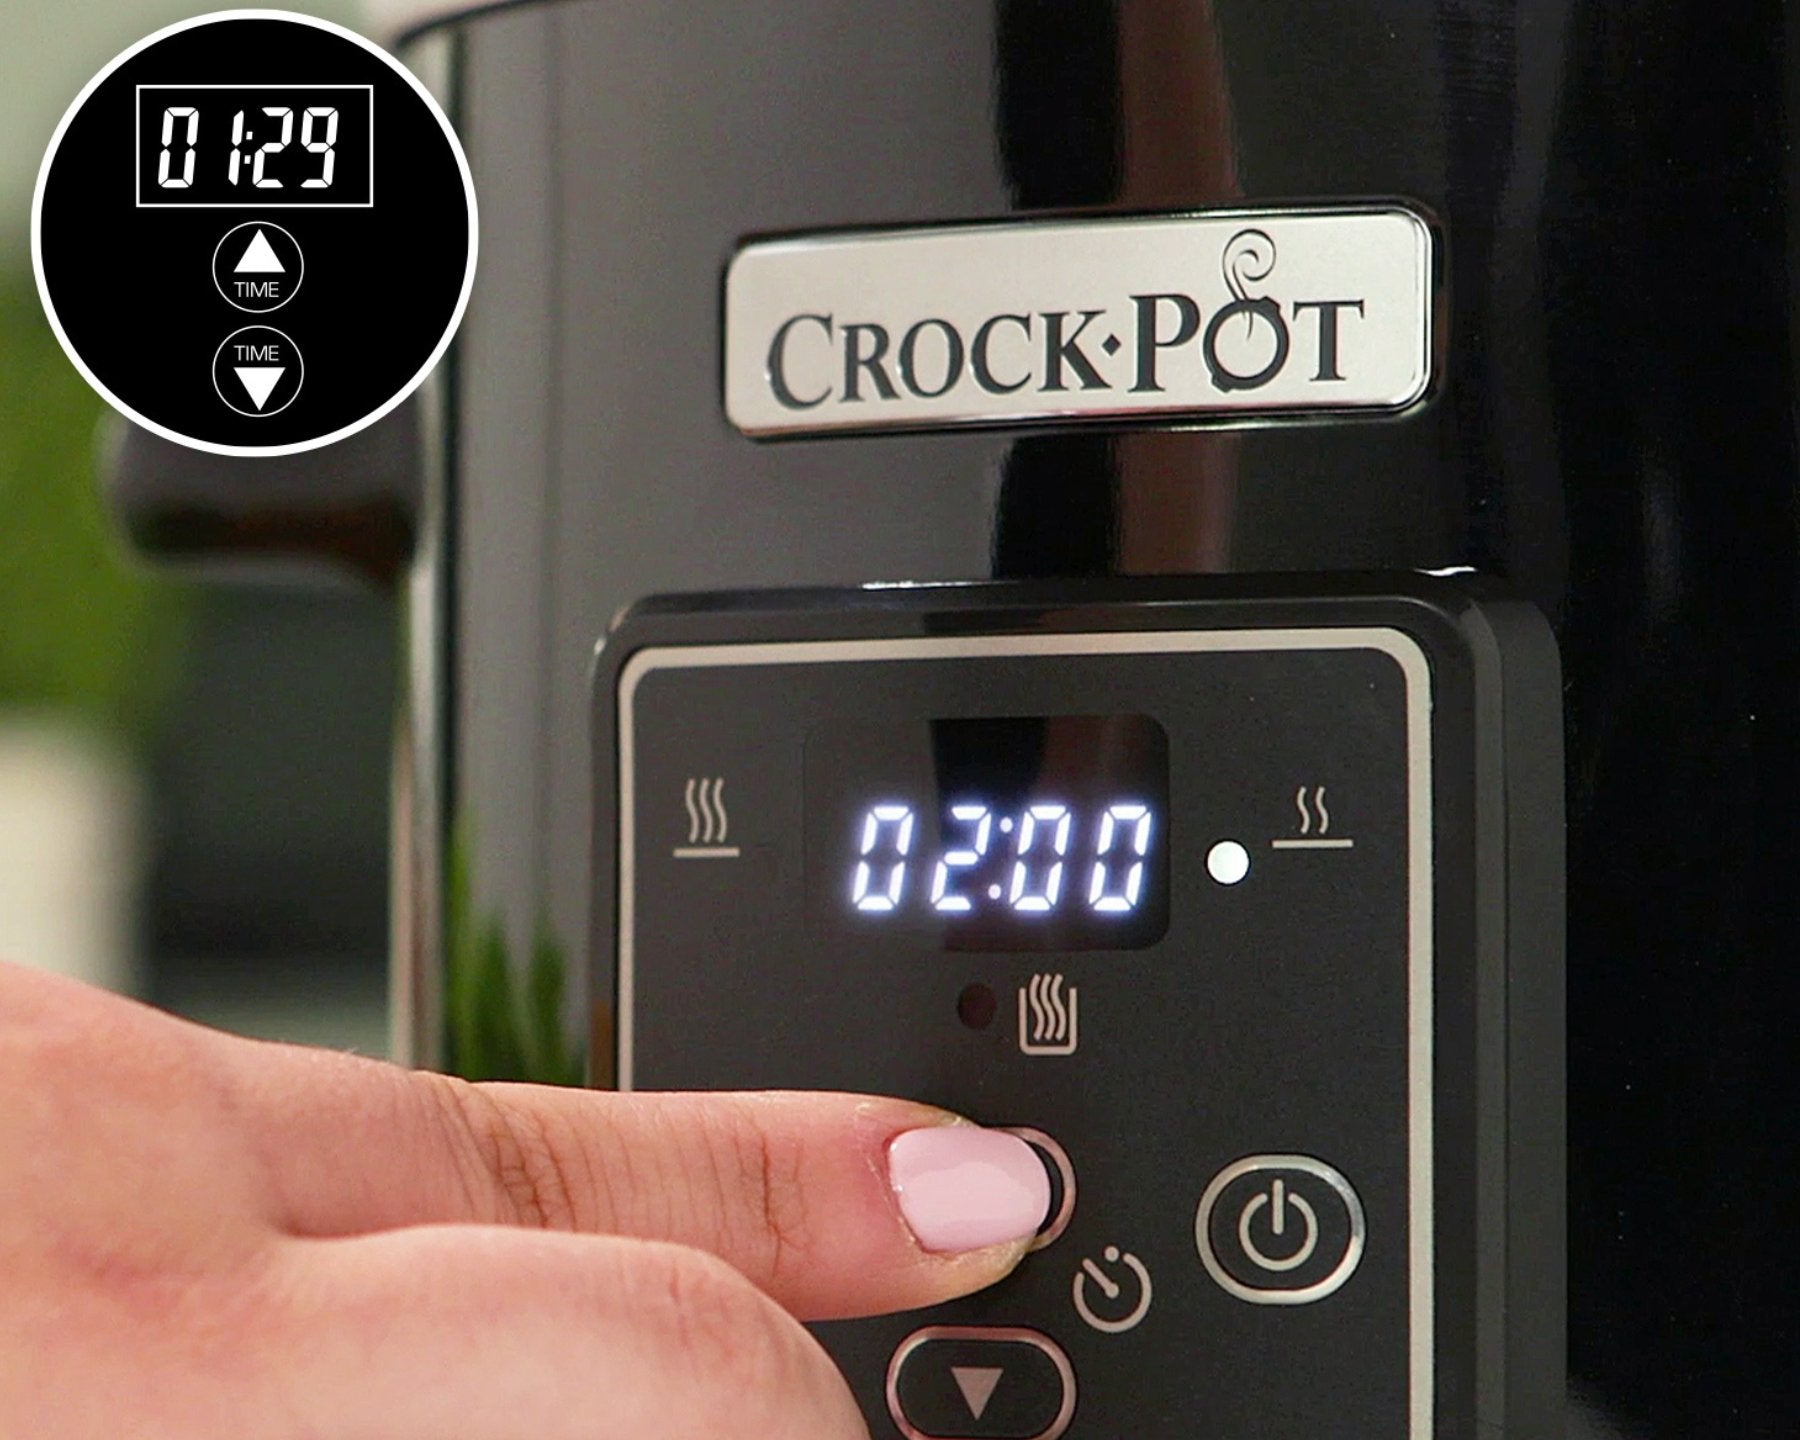 Crockpot ® Digital, 2.4 L, Slow cooker - kitchen-more.ch, kostenloser Versand in der ganzen Schweiz